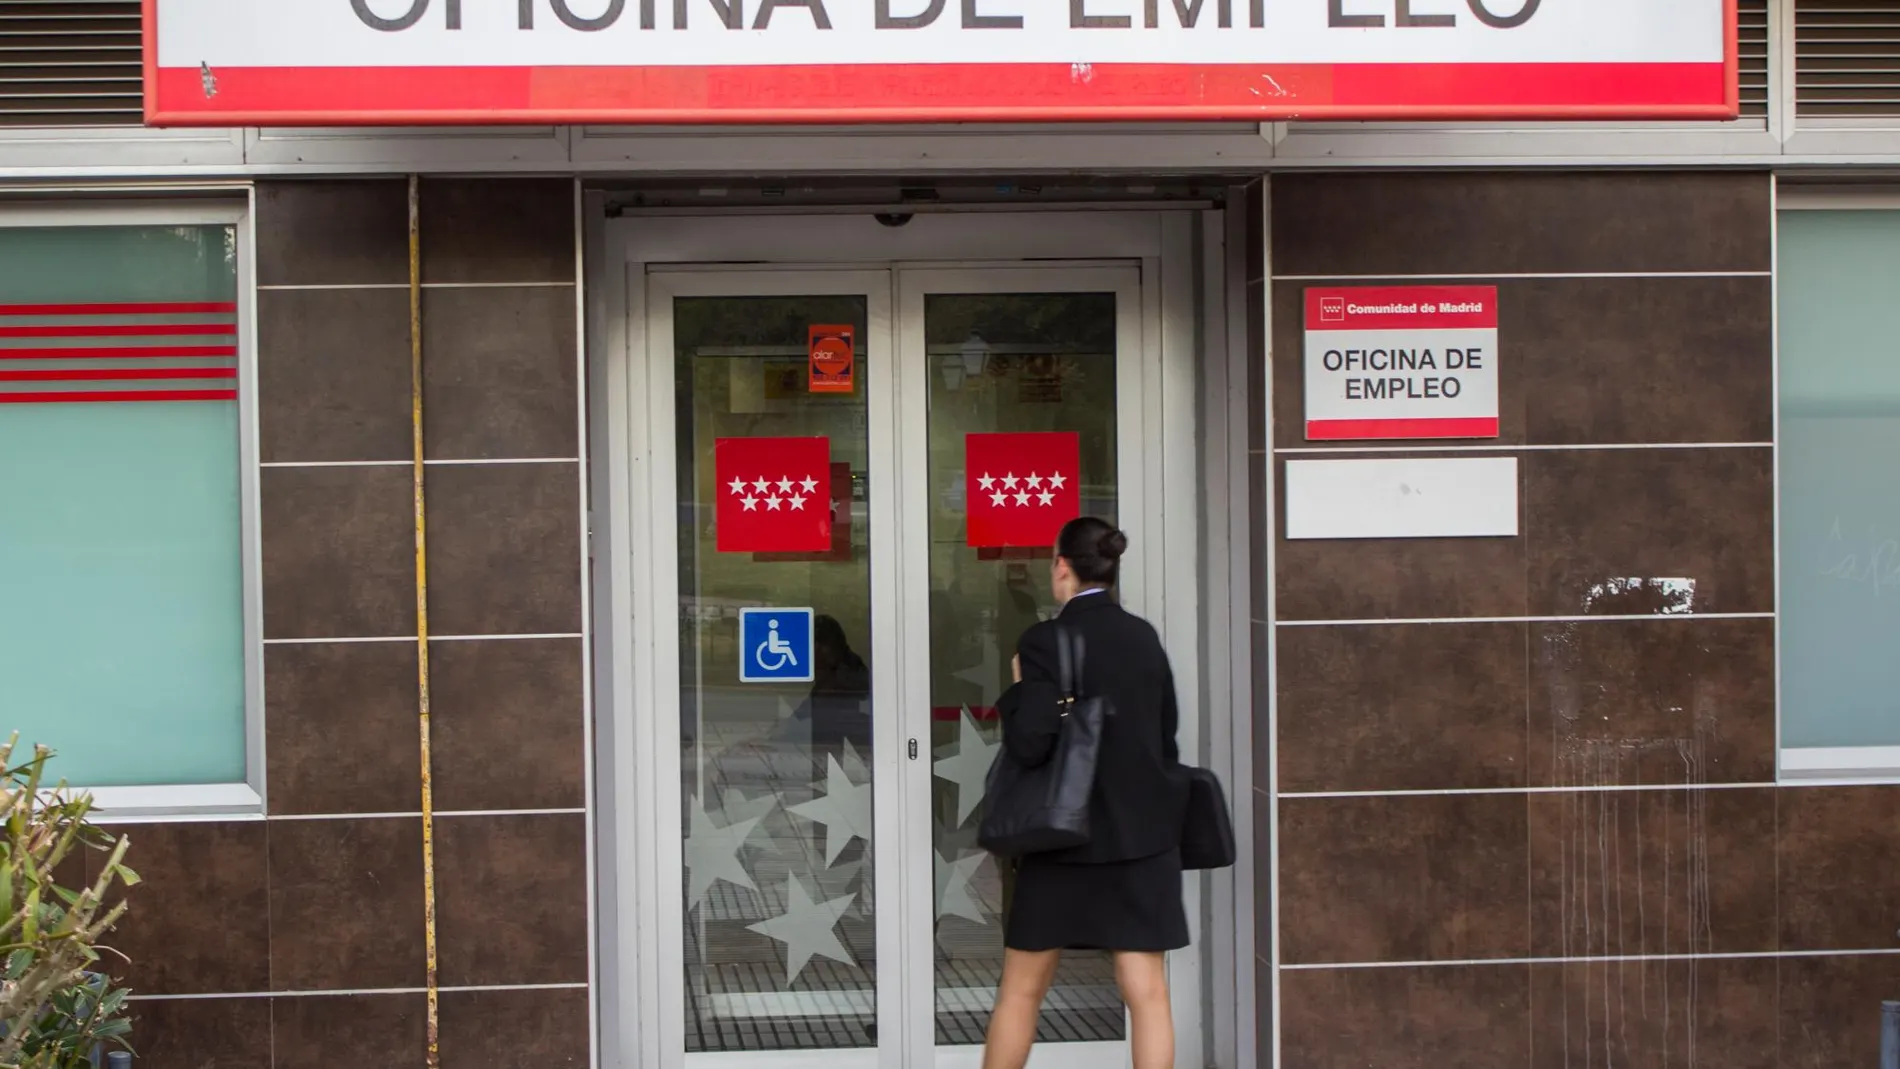 Oficina de desempleo del INEM. Foto: Paula Jiménez